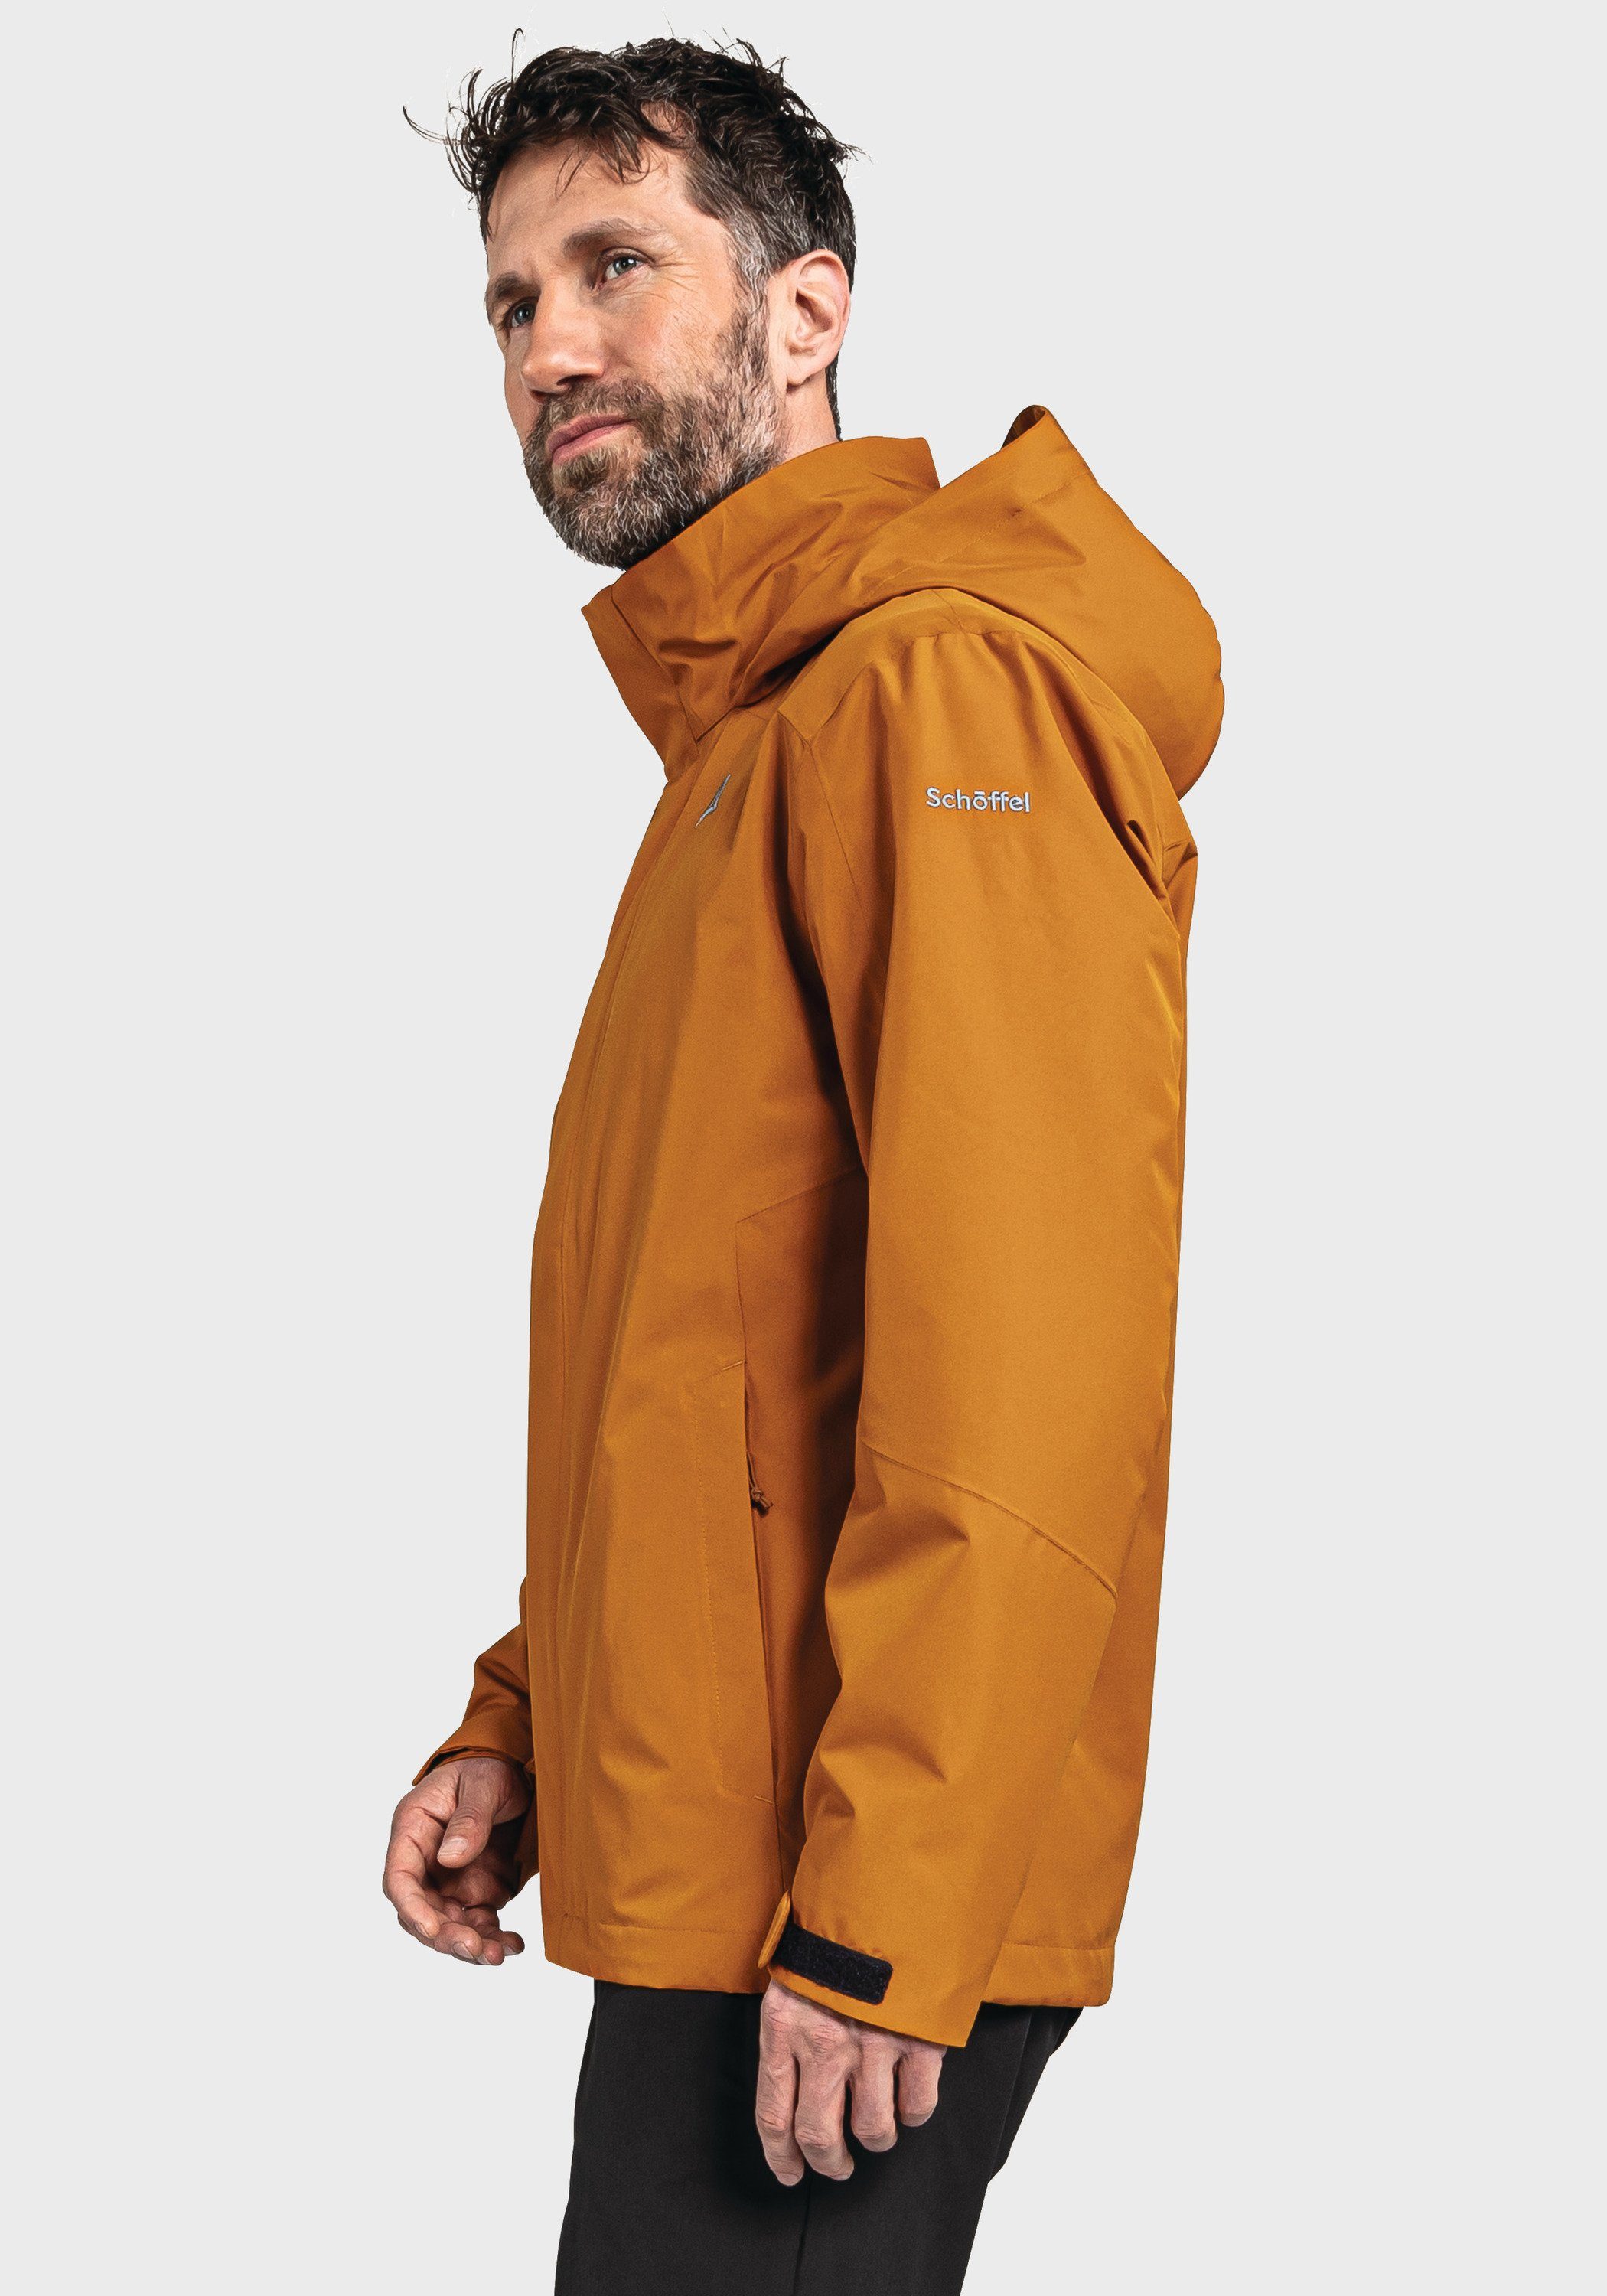 Doppeljacke Schöffel orange 3in1 Jacket Partinello M